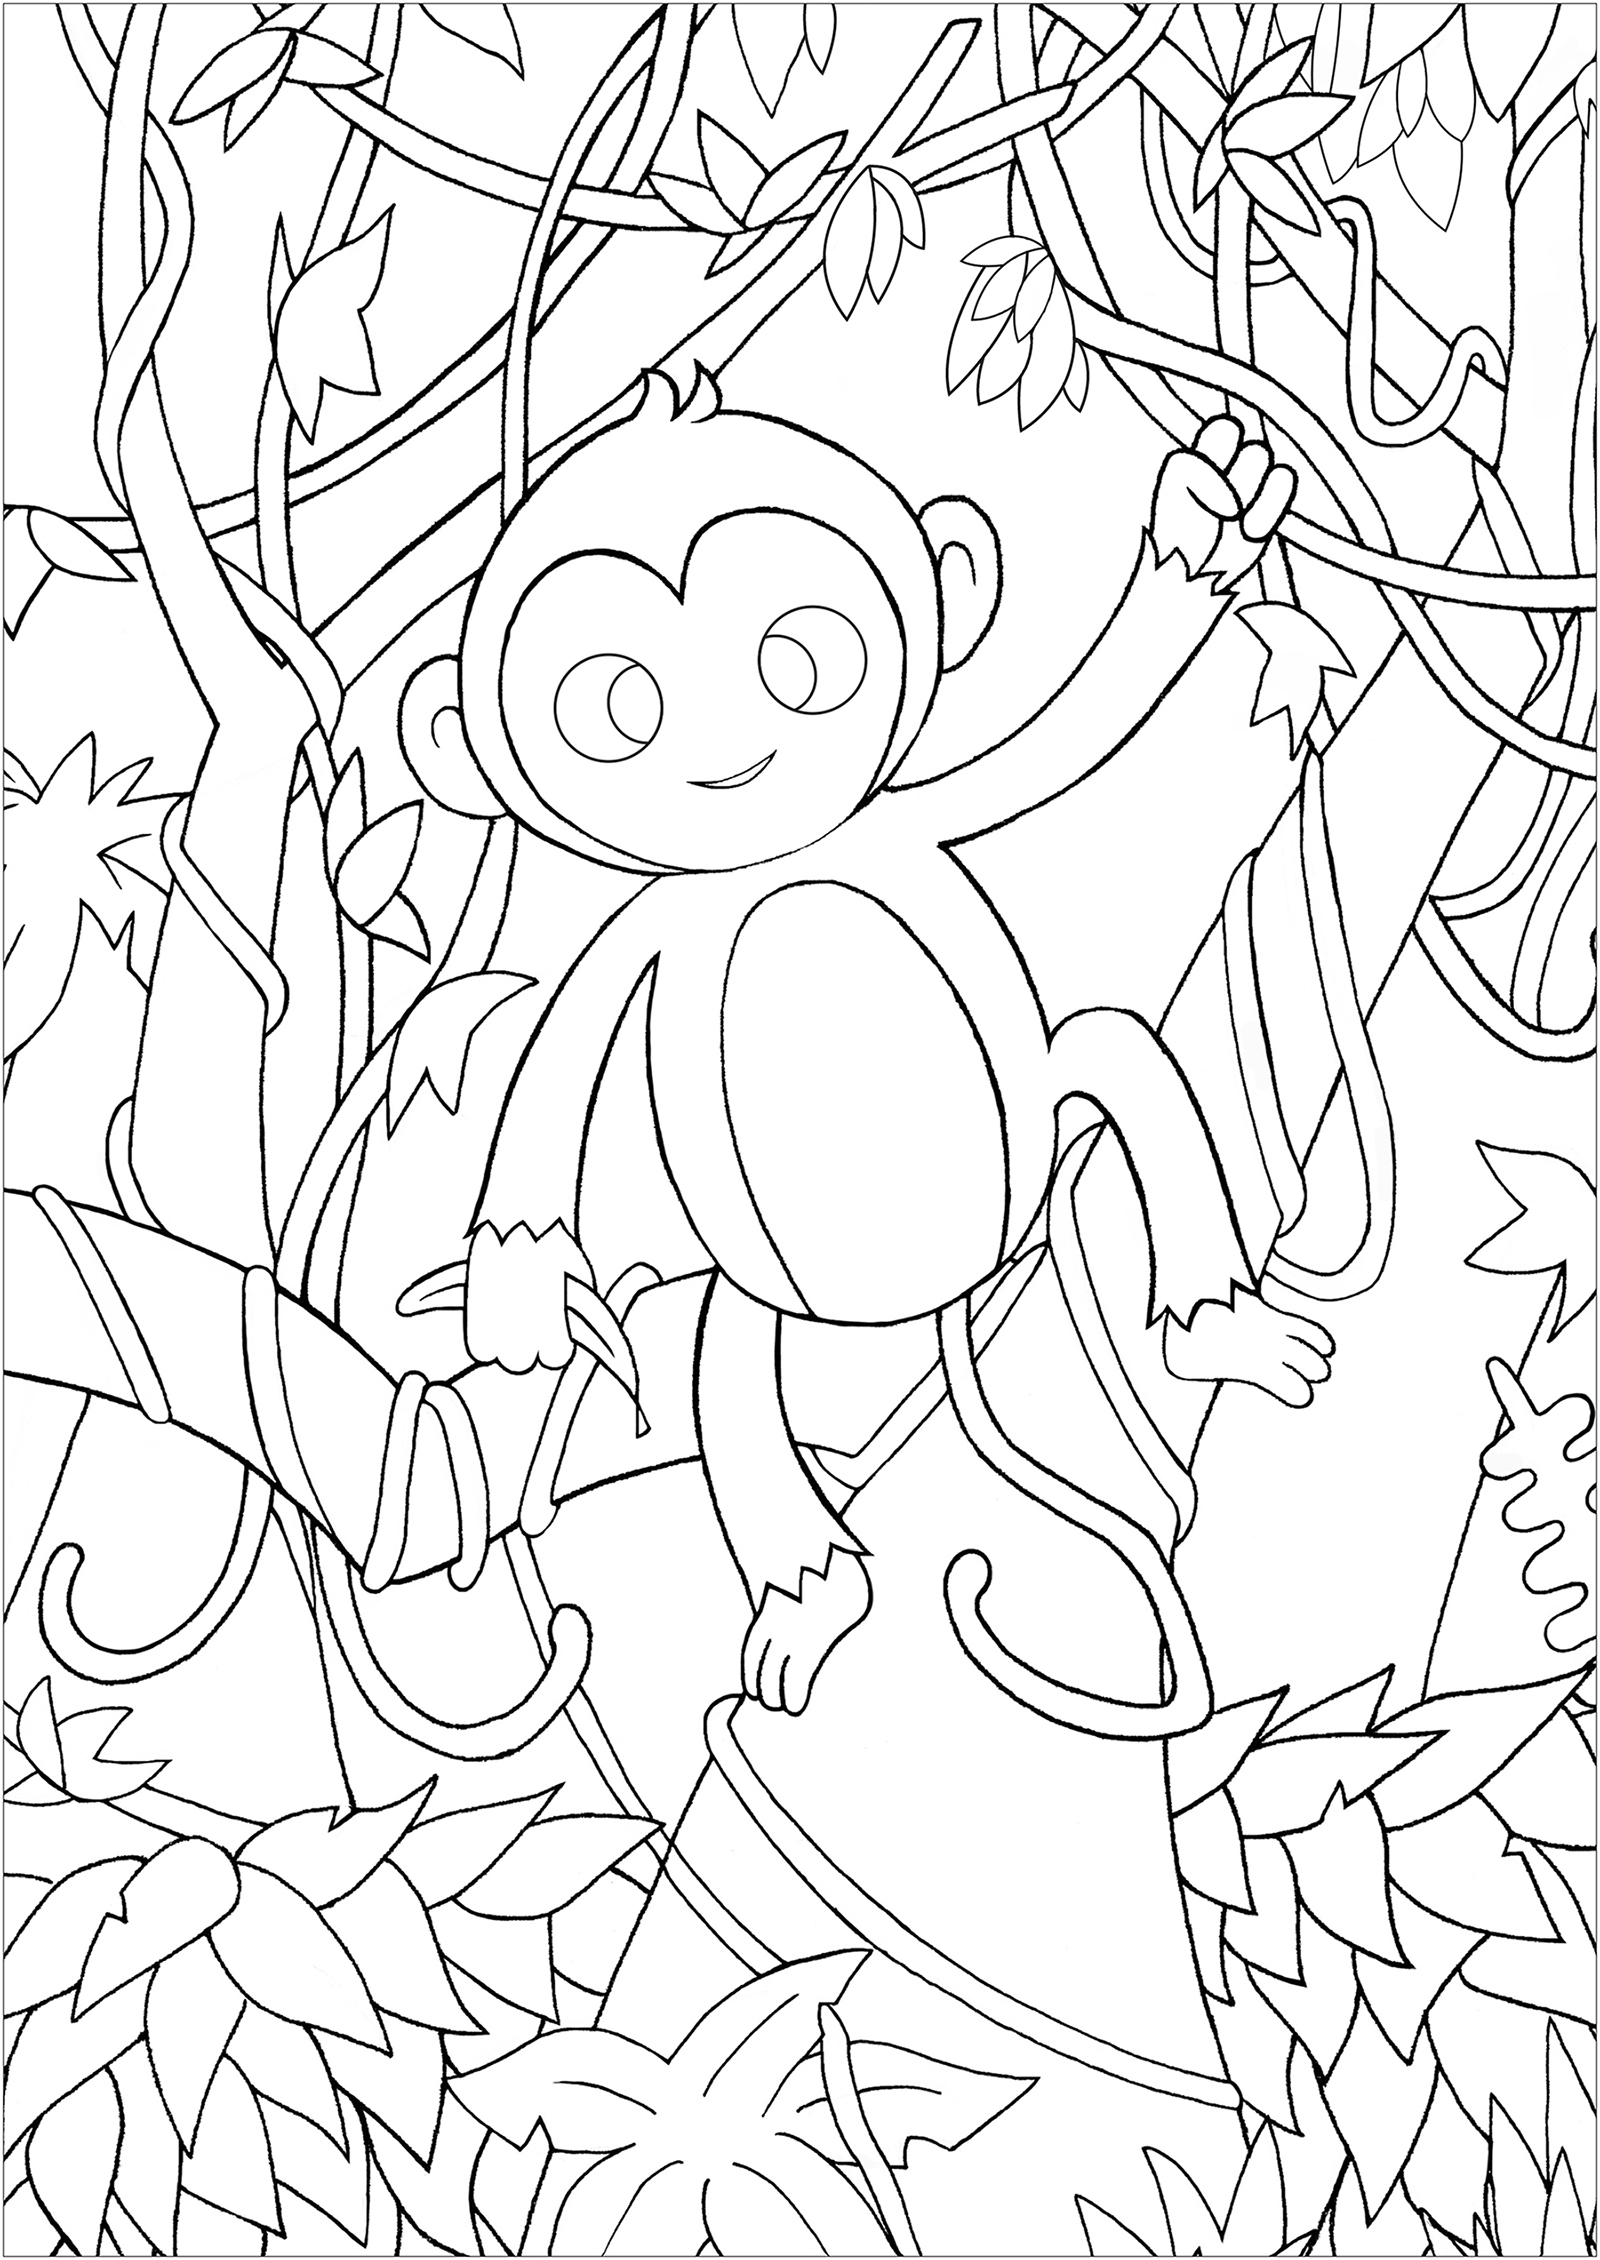 Ein niedlicher Affe zwischen den Lianen, Blättern und Zweigen des Dschungels